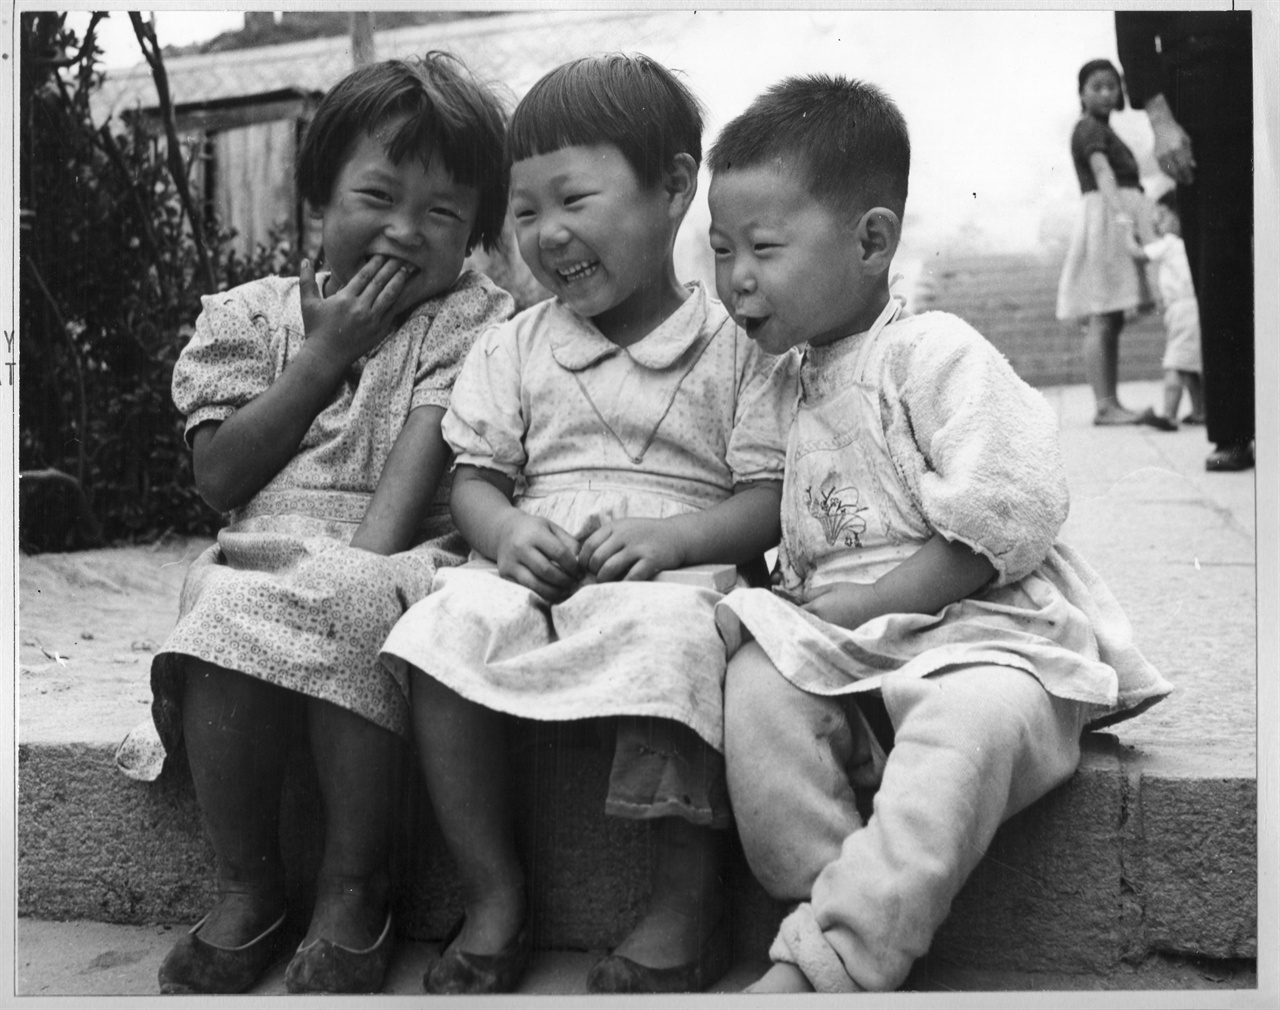  1951. 10. 26. 부산. 어린이들의 티 없는 웃음.